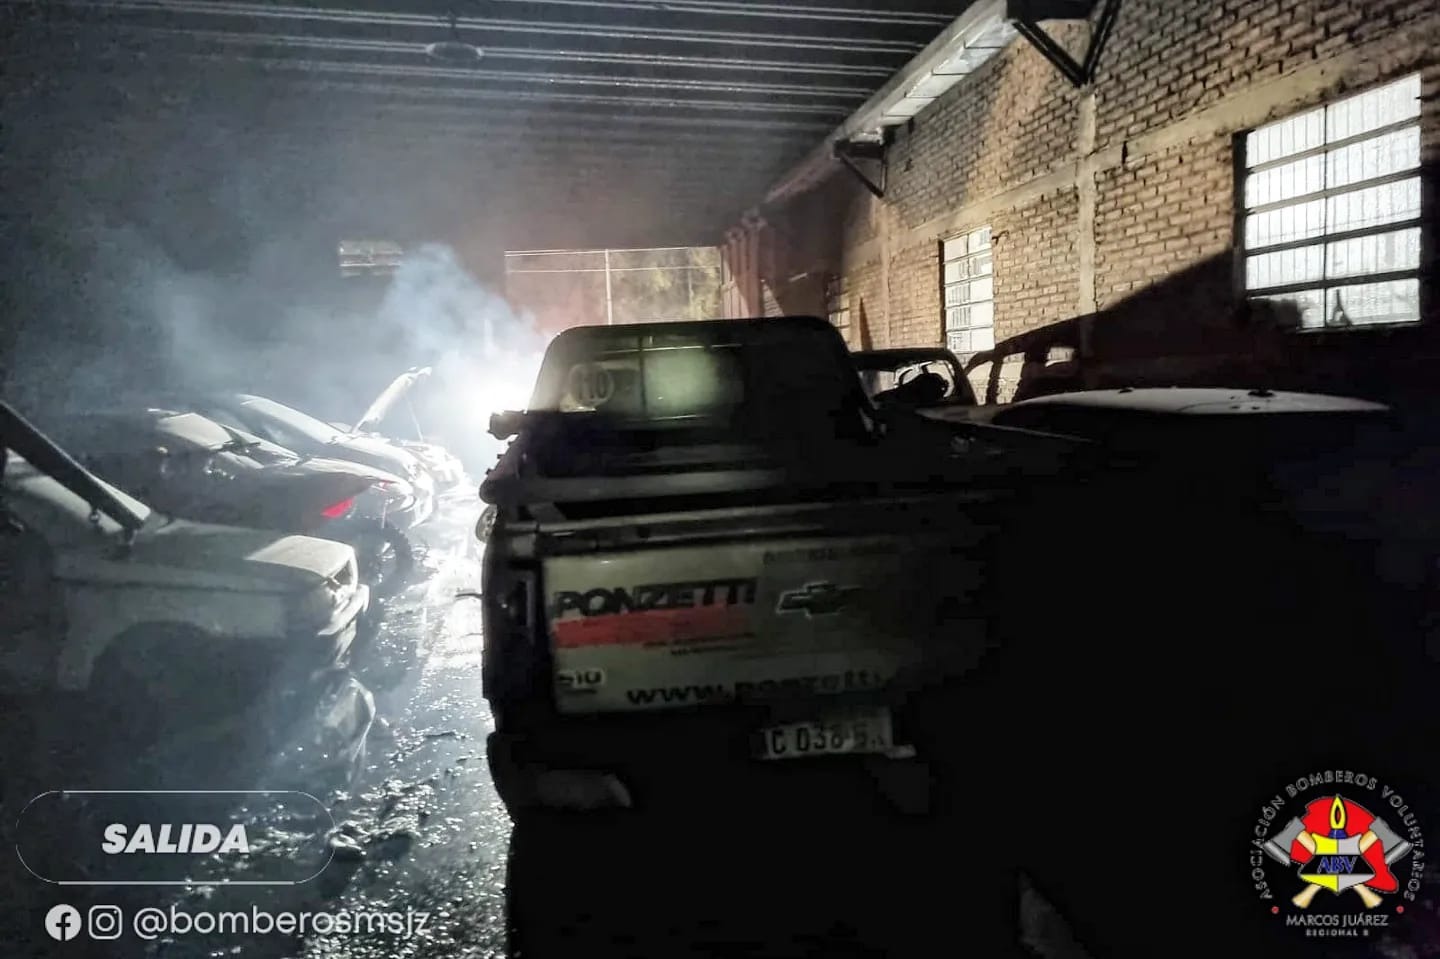  Incendio en un taller mecánico en Ruta 9 y Hermanas Vicentinas con importantes daños materiales